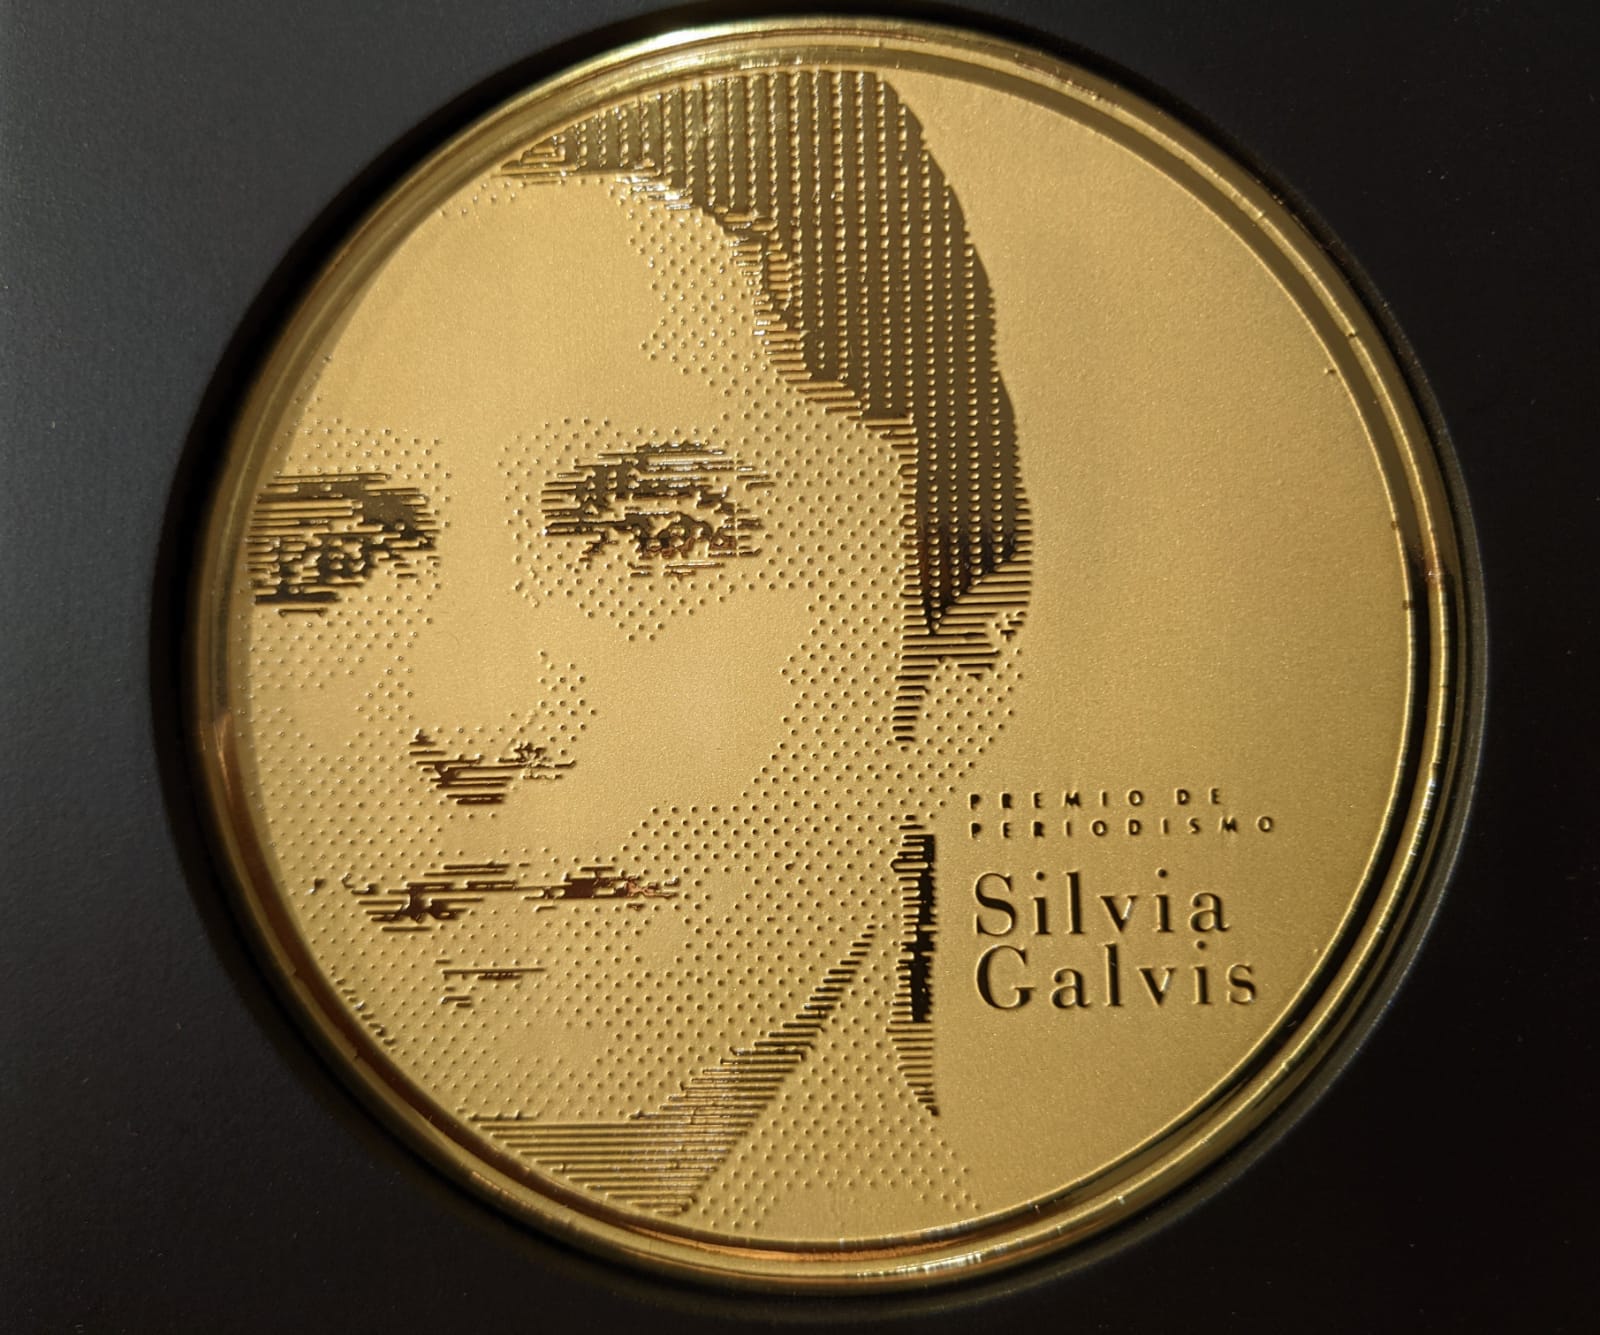 Premio Silvia Galvis de periodismo entregó reconocimientos en su cuarta versión